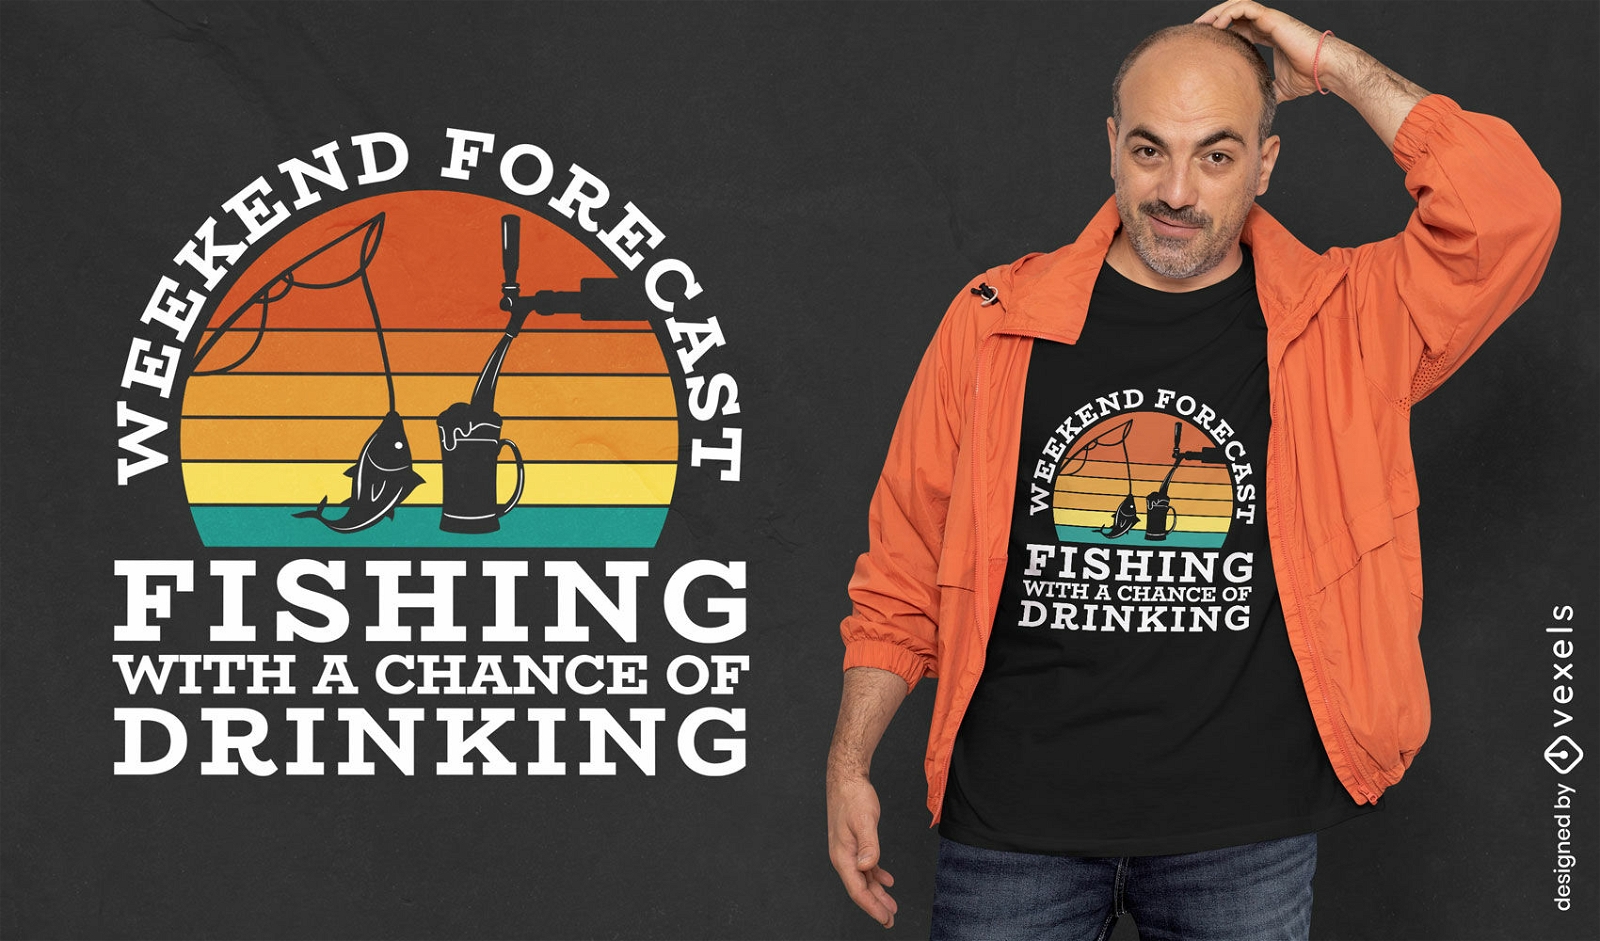 Dise?o de camiseta de pesca y bebida.